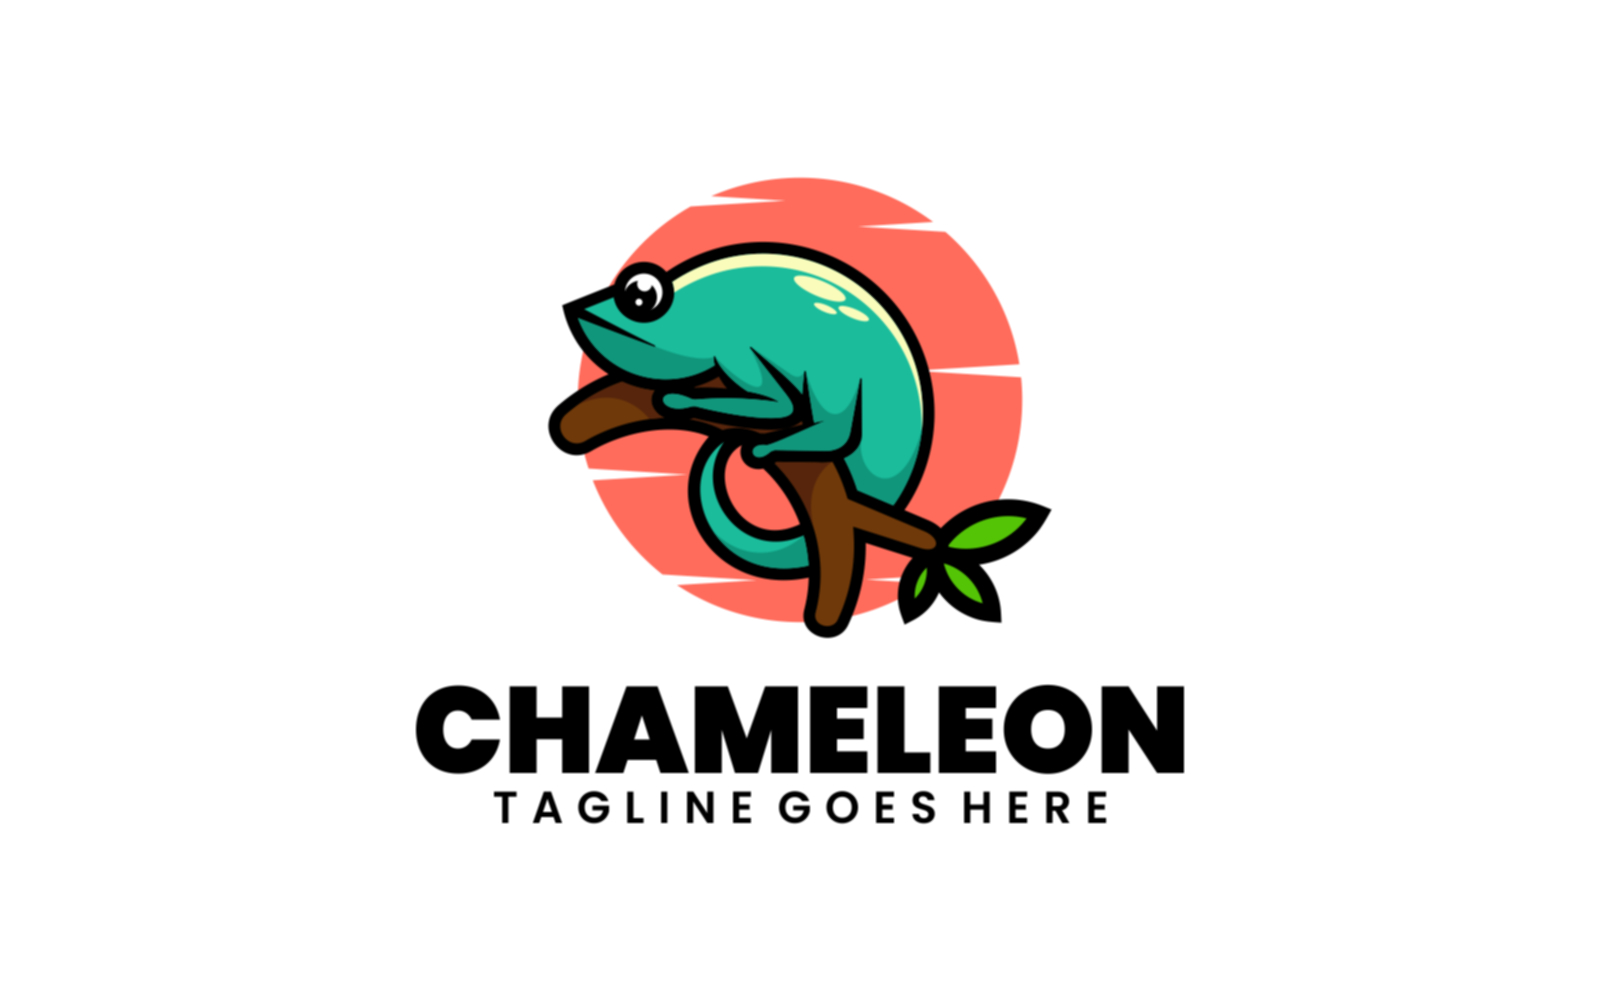 Chameleon Simple Mascot Logo 2